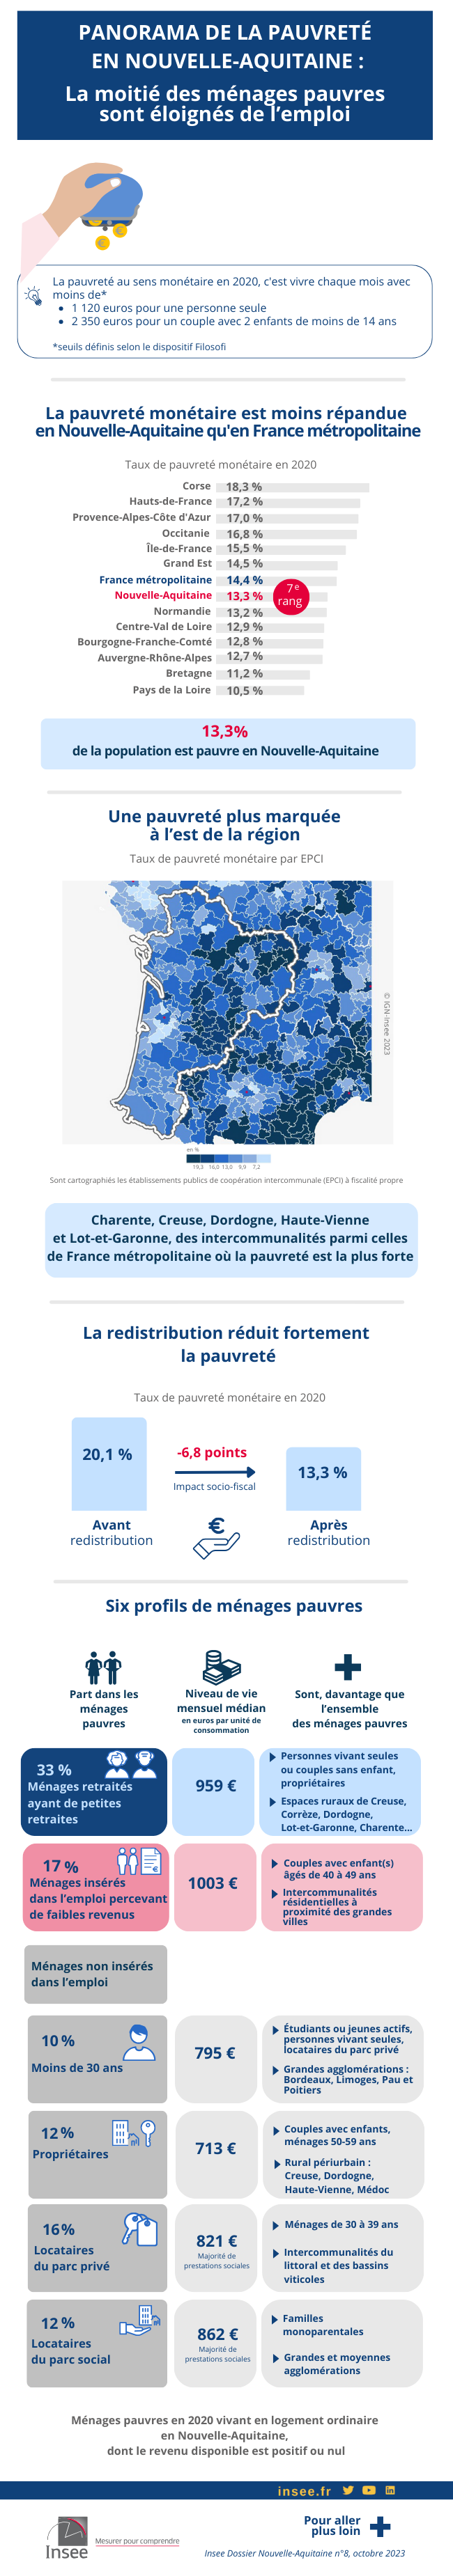 Panorama de la pauvreté en Nouvelle-Aquitaine : une diversité de situations individuelles et territoriales